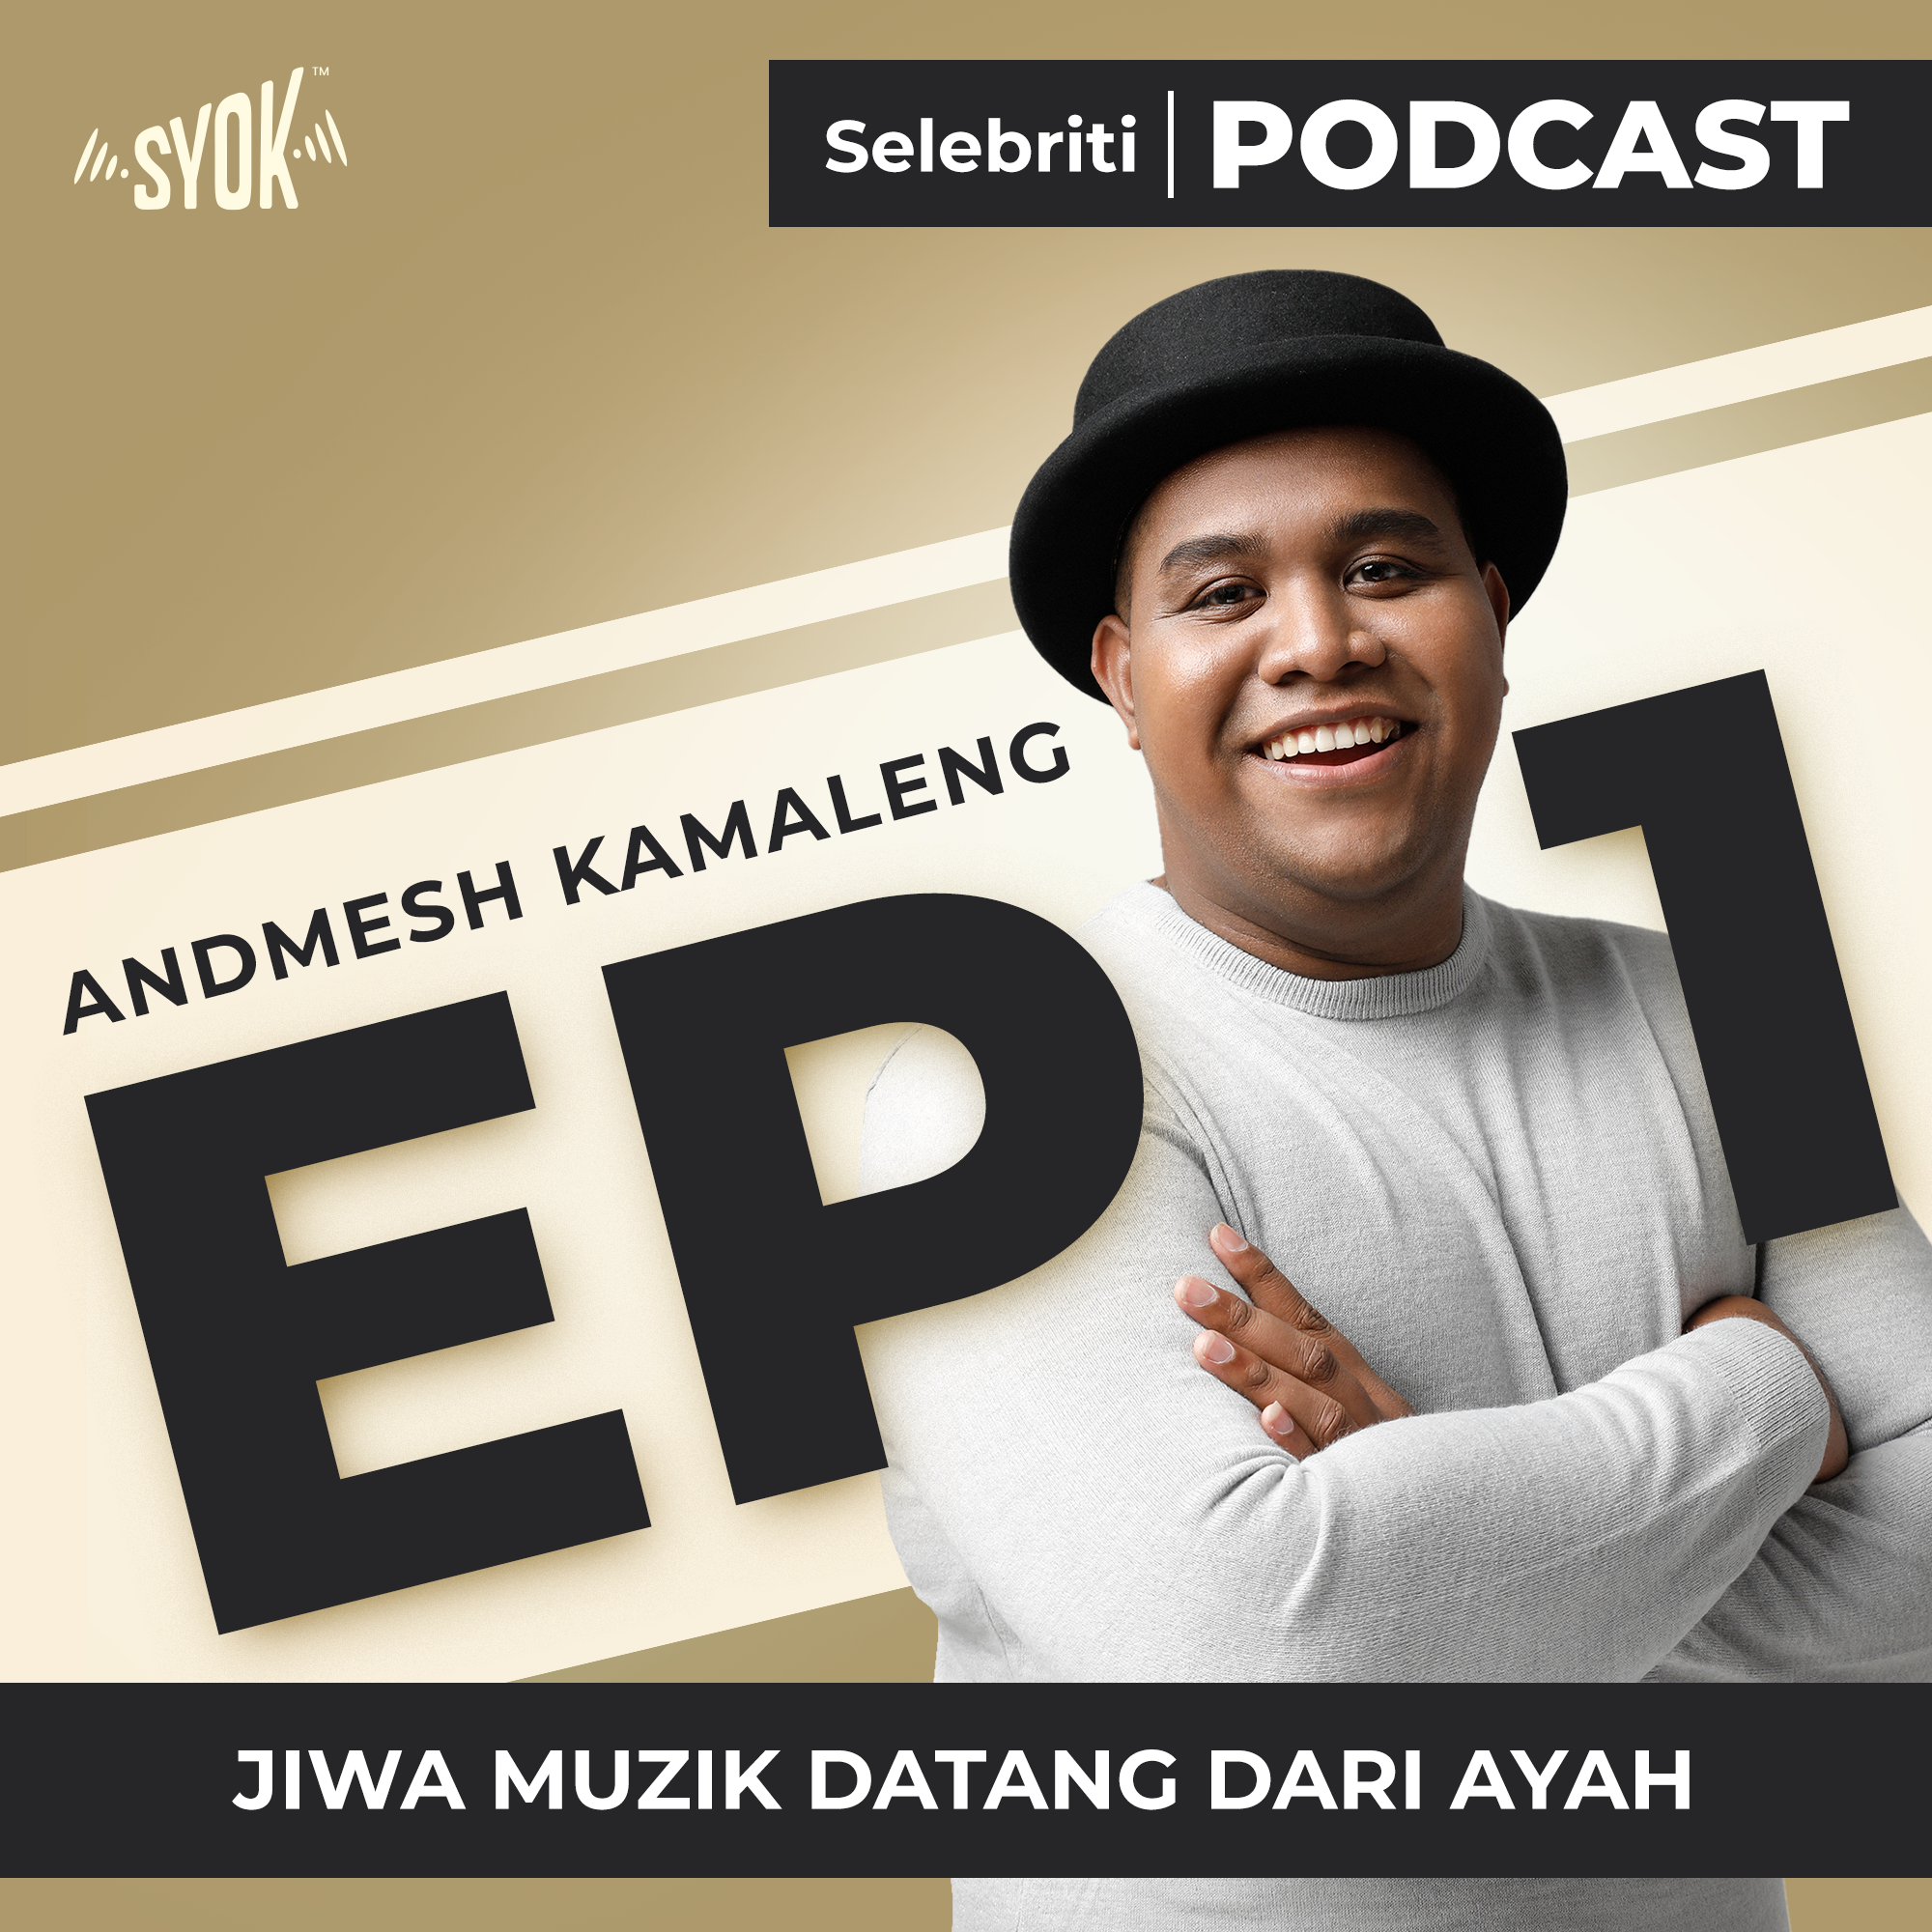 JIWA MUZIK DATANG DARI AYAH | Selebriti Podcast Andmesh Kamaleng EP1